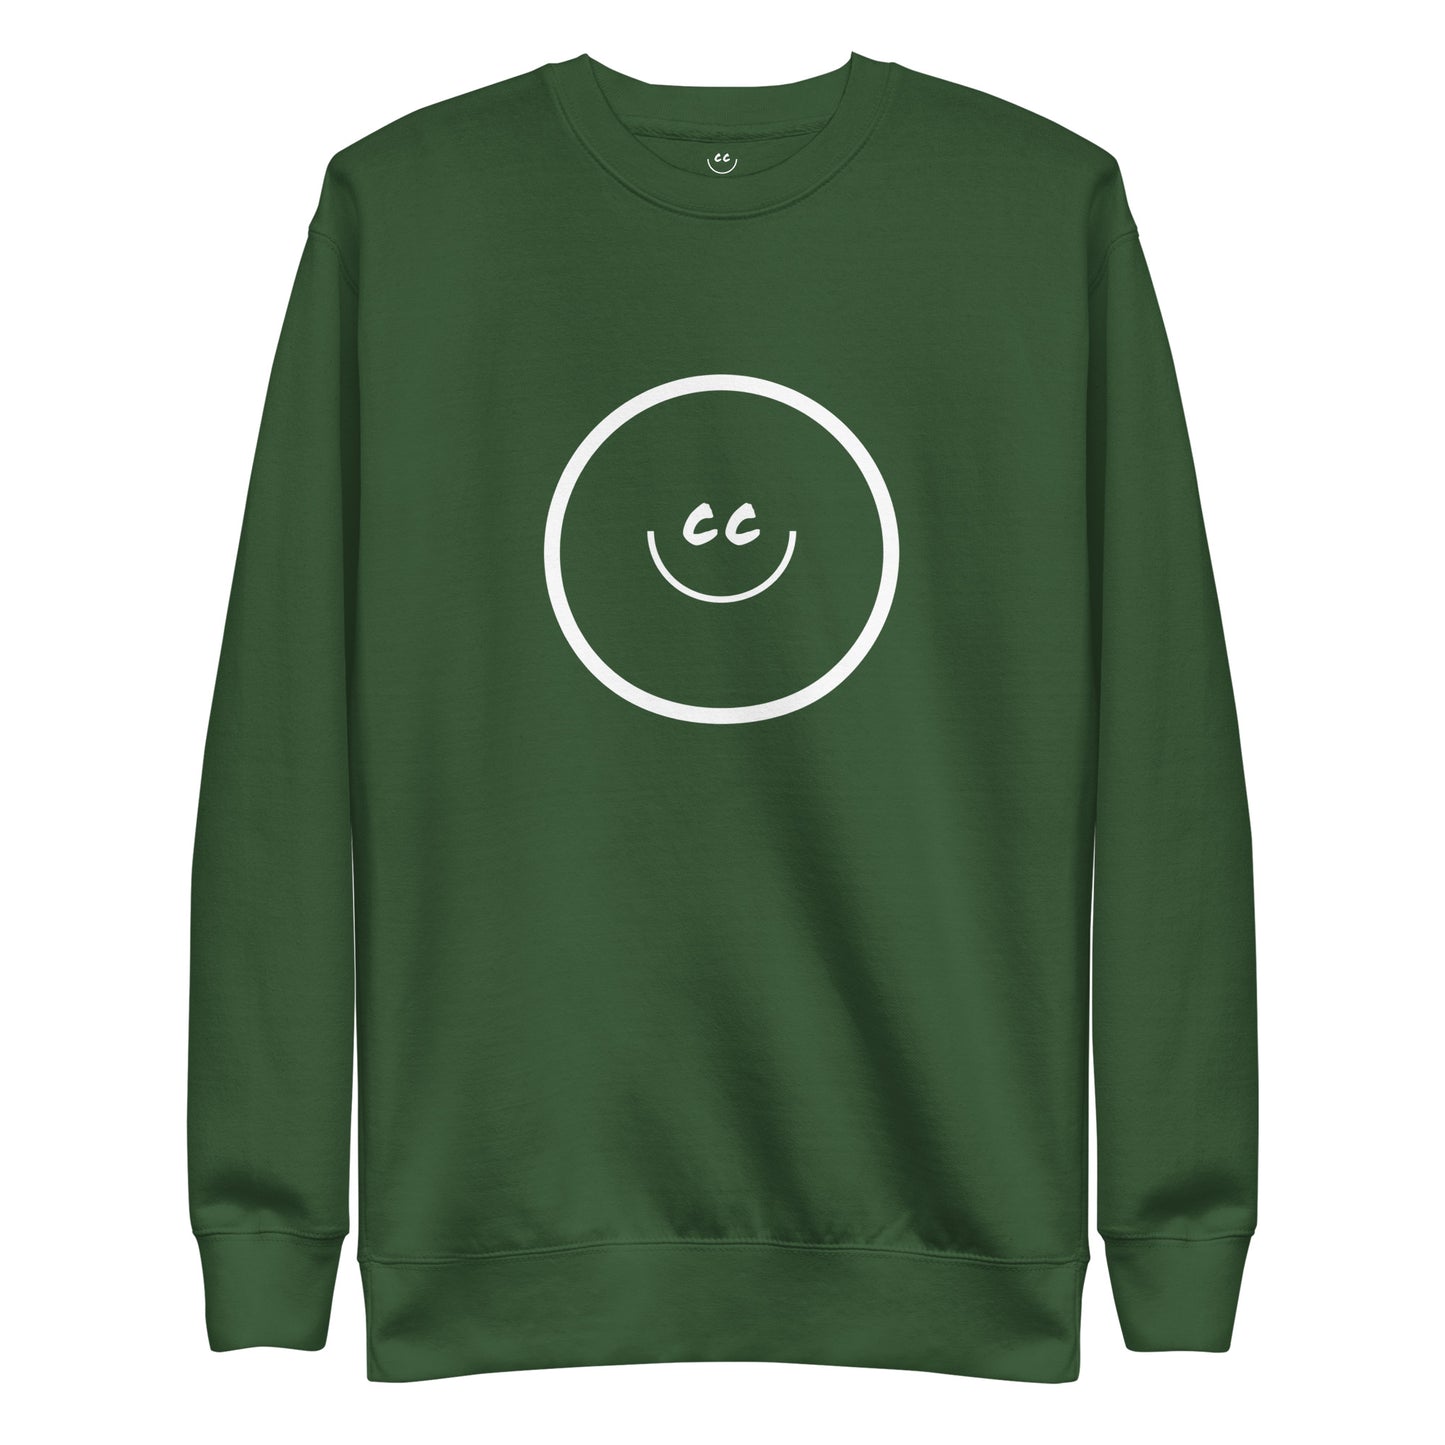 Big Smile Fleece in Forest Green - Sweatshirt